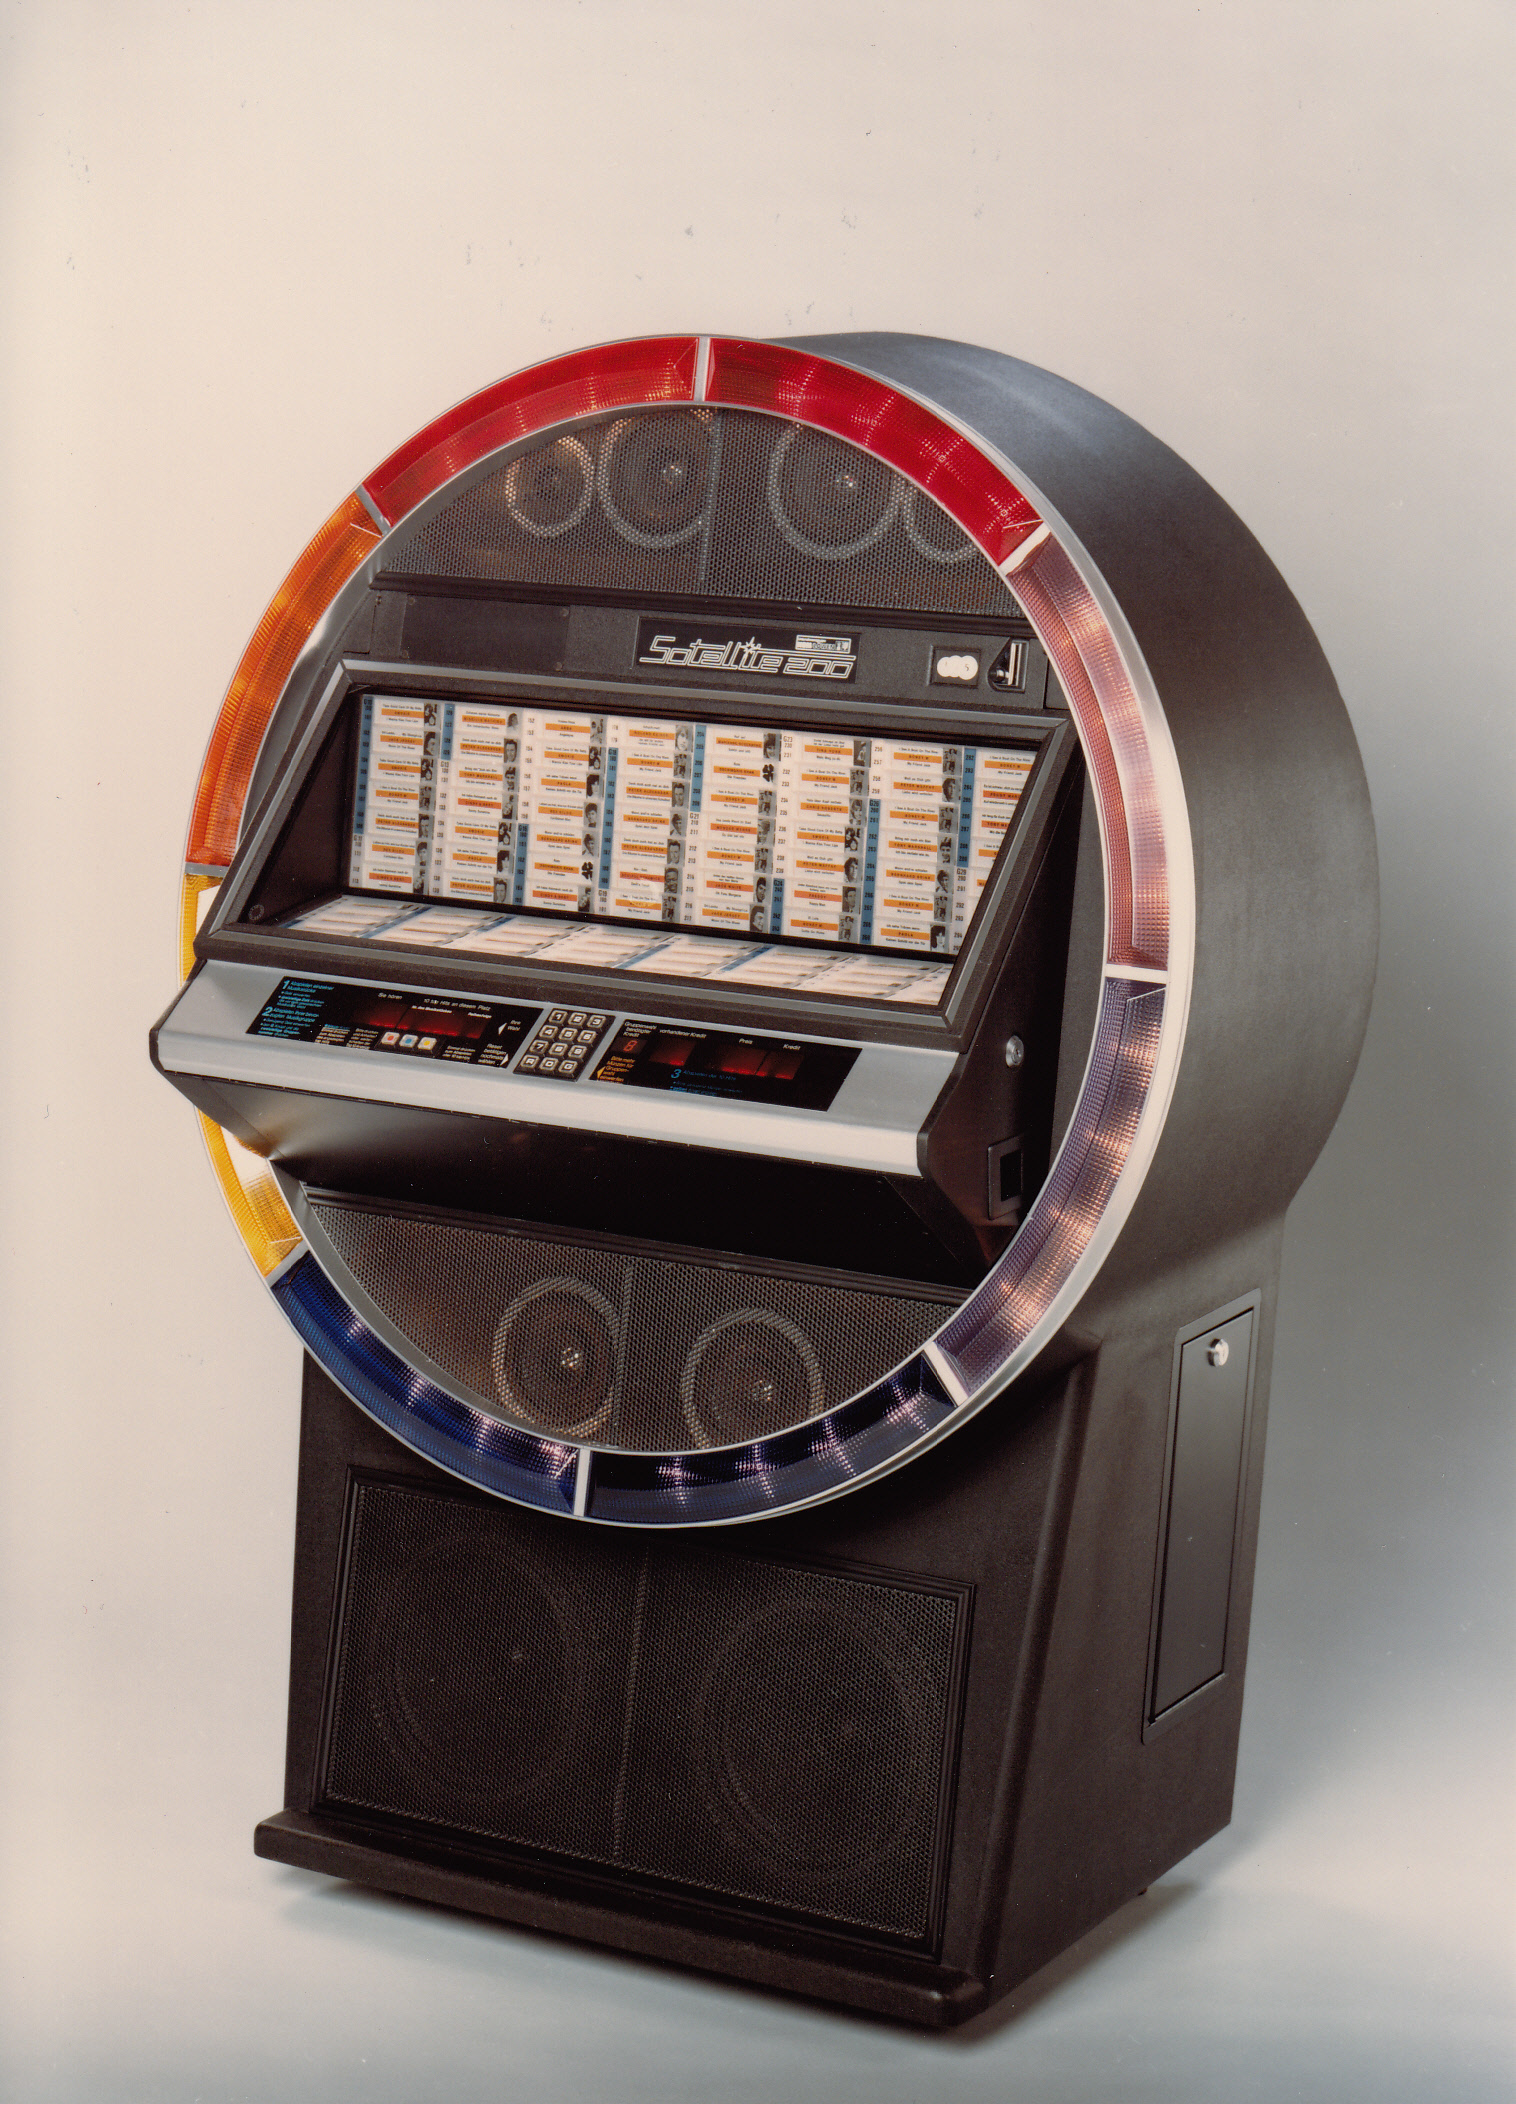 1982 golden age classic jukebox satellite 200